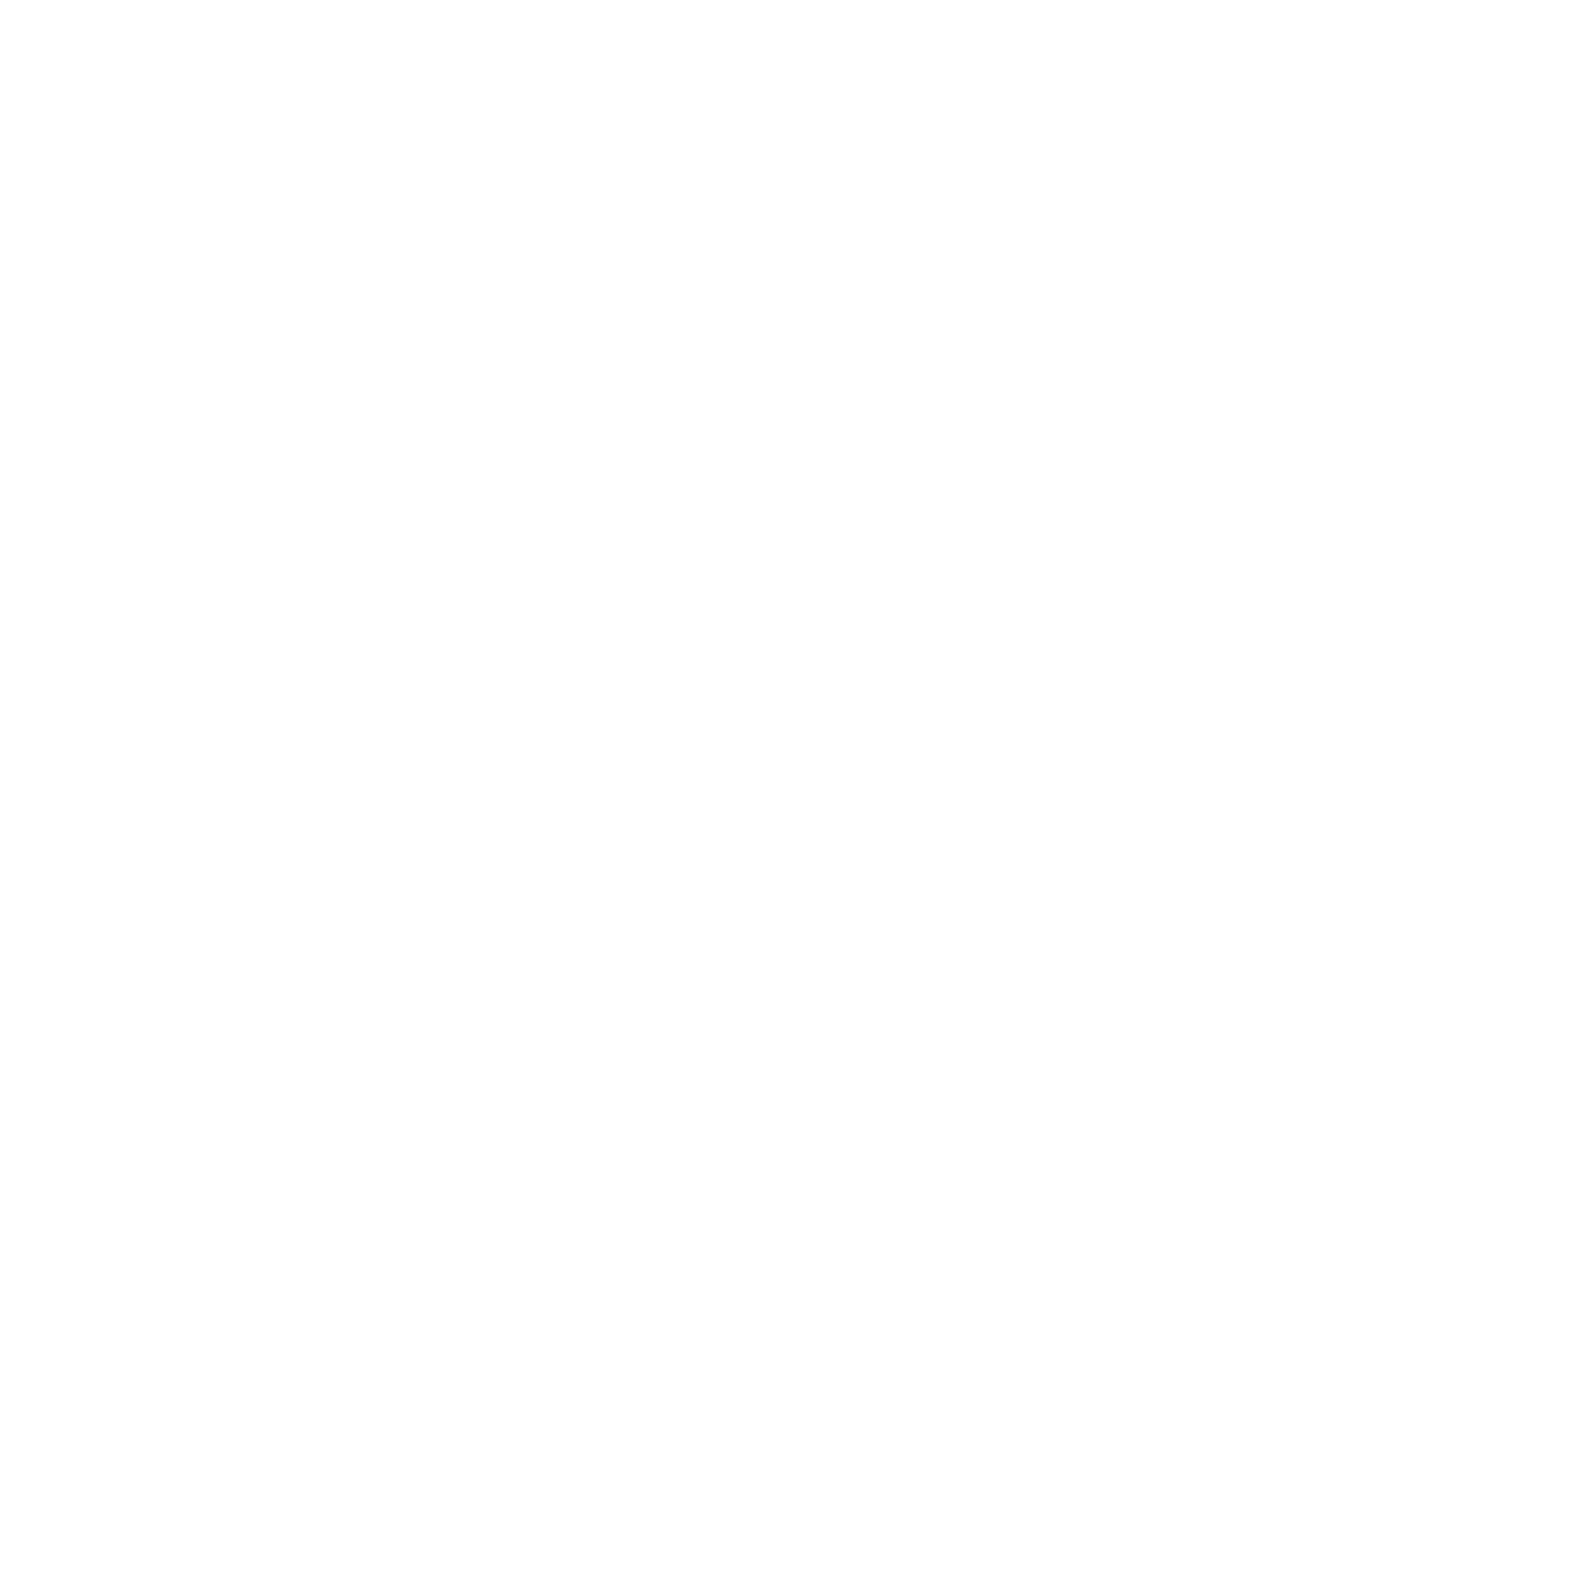 Gevo logo for dark backgrounds (transparent PNG)